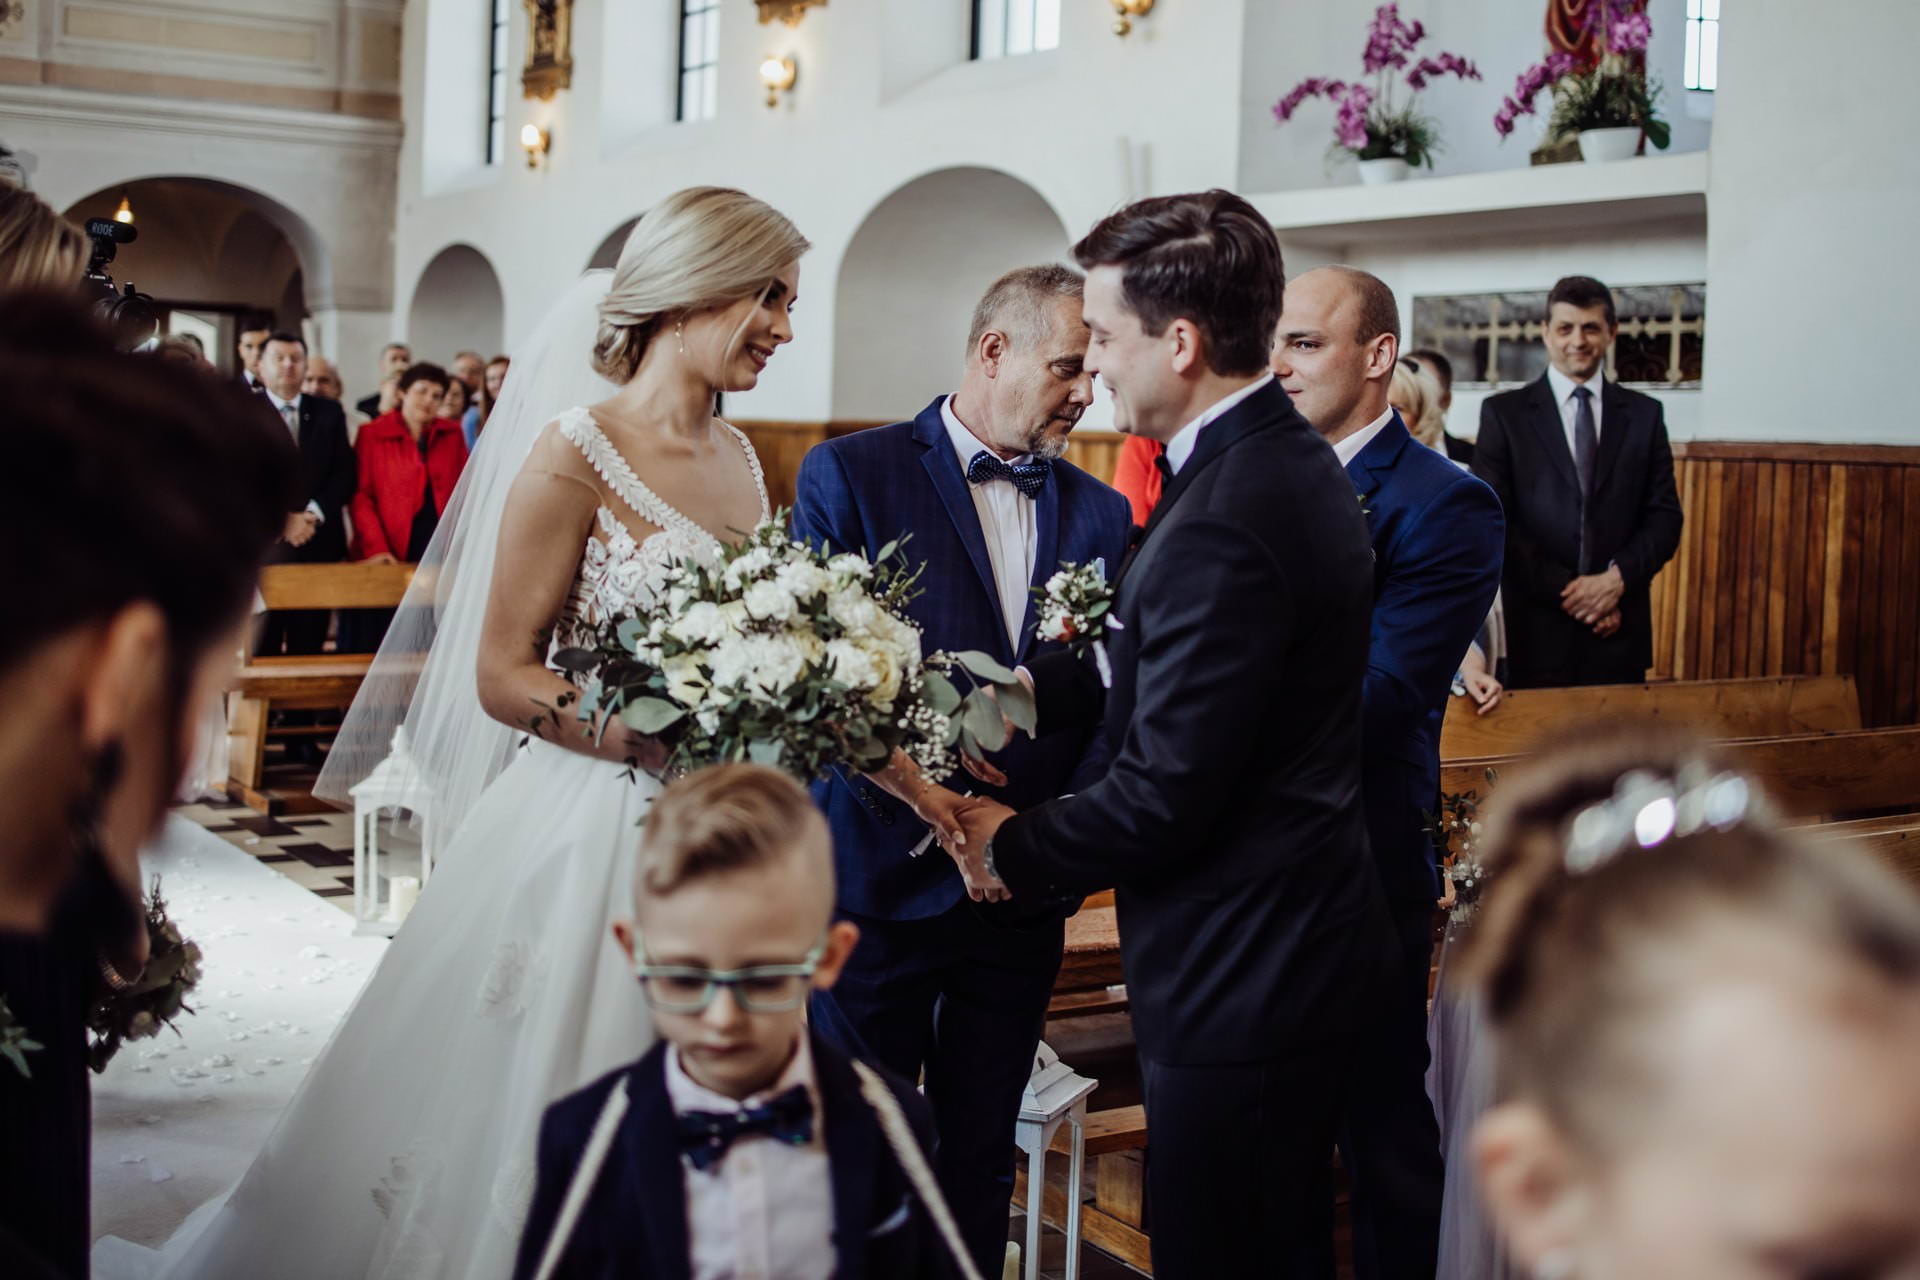 wesele w Belchatowie